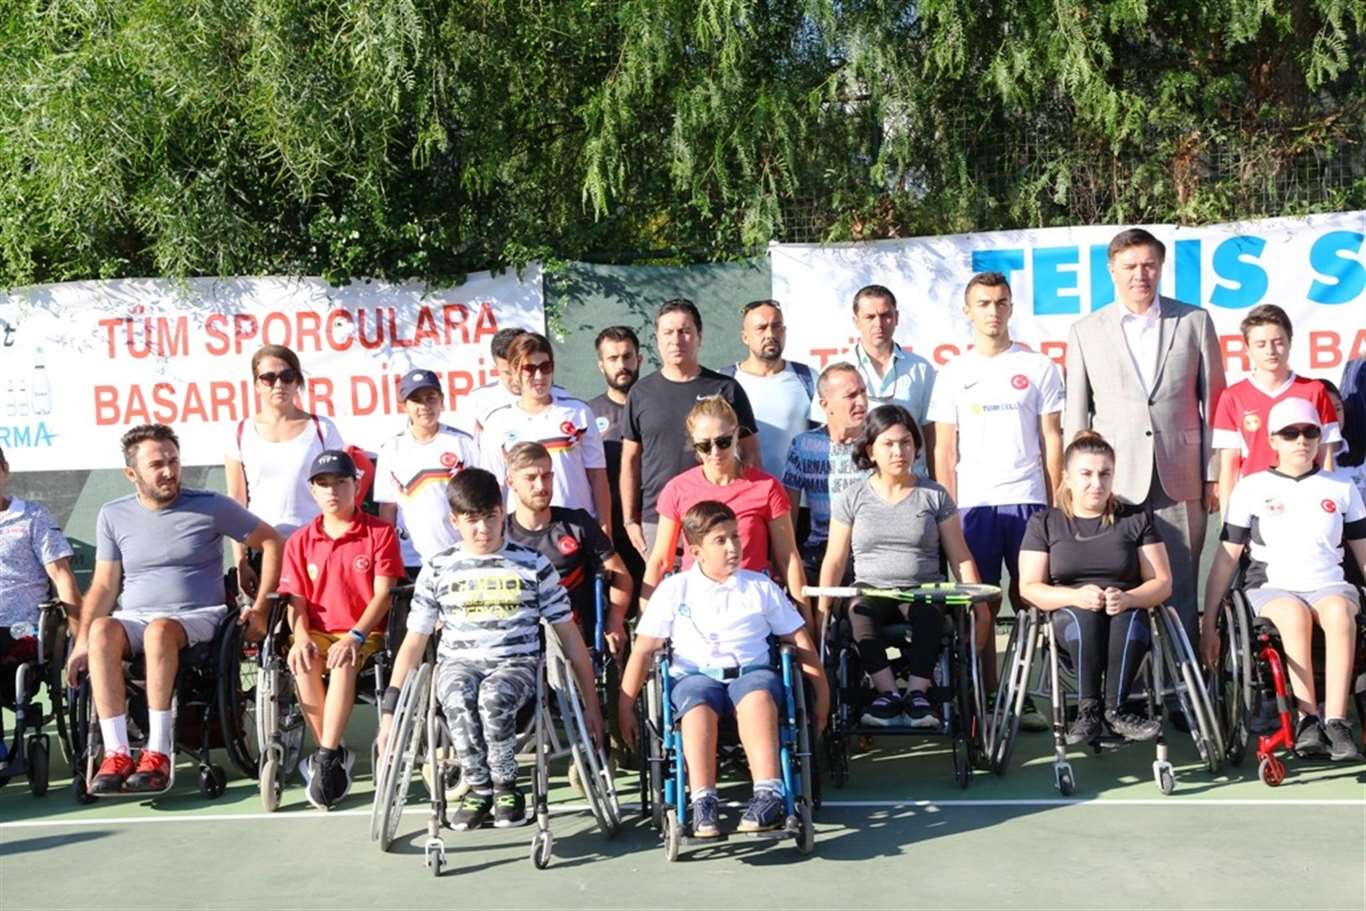 Tekerlekli sandalye tenis Türkiye şampiyonası Bodrum'da başladı haberi